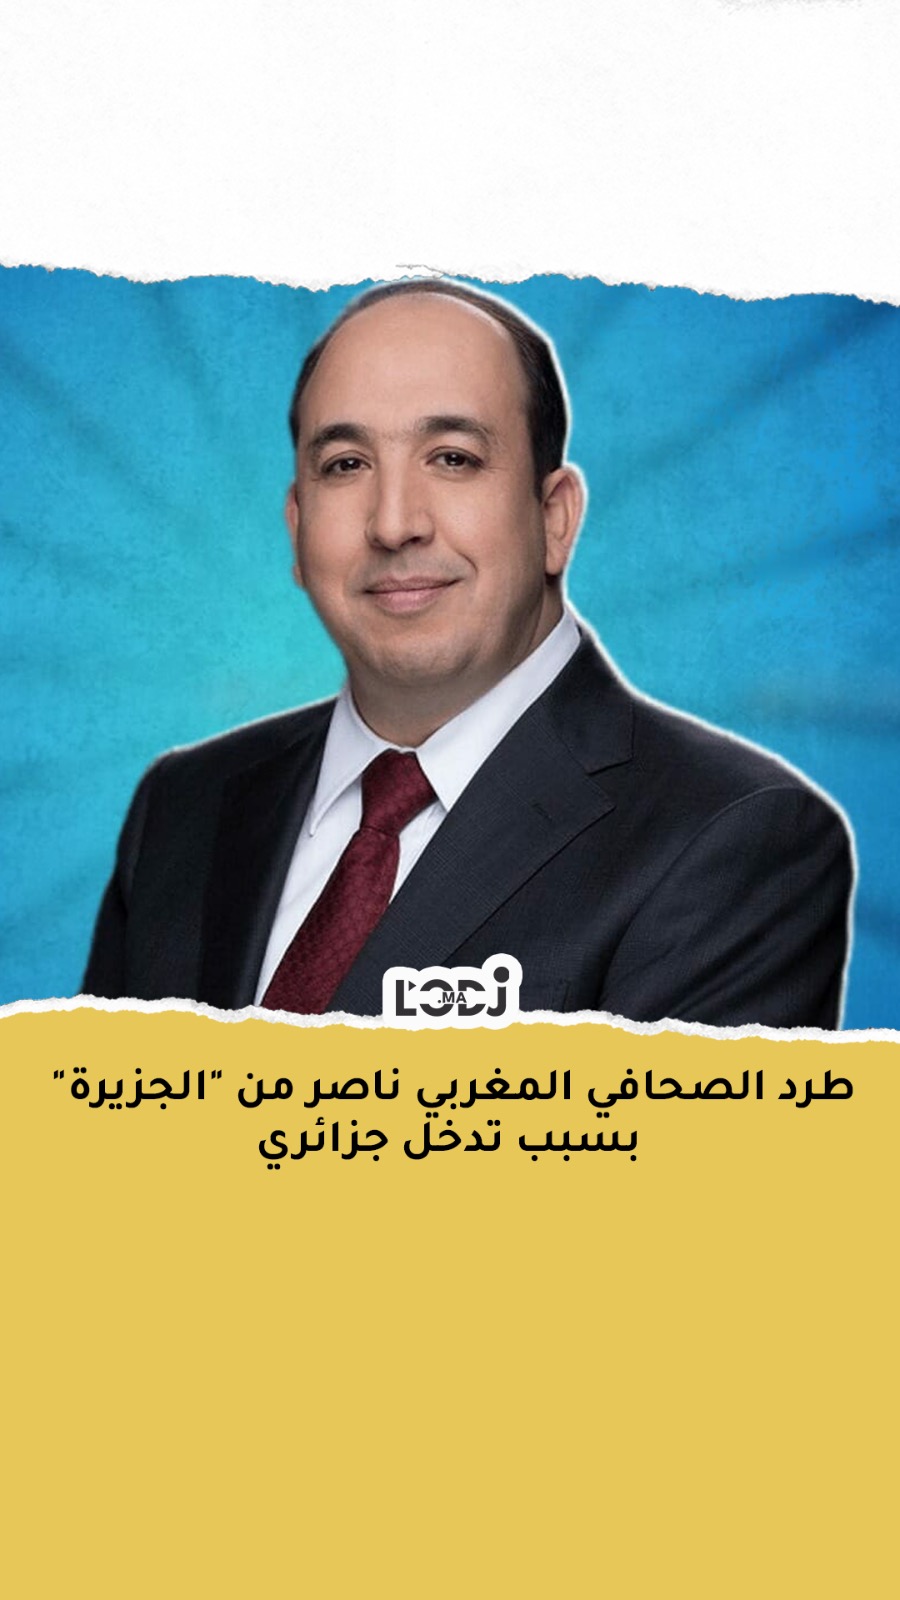 طرد الصحافي المغربي ناصر من "الجزيرة" بسبب تدخل جزائري